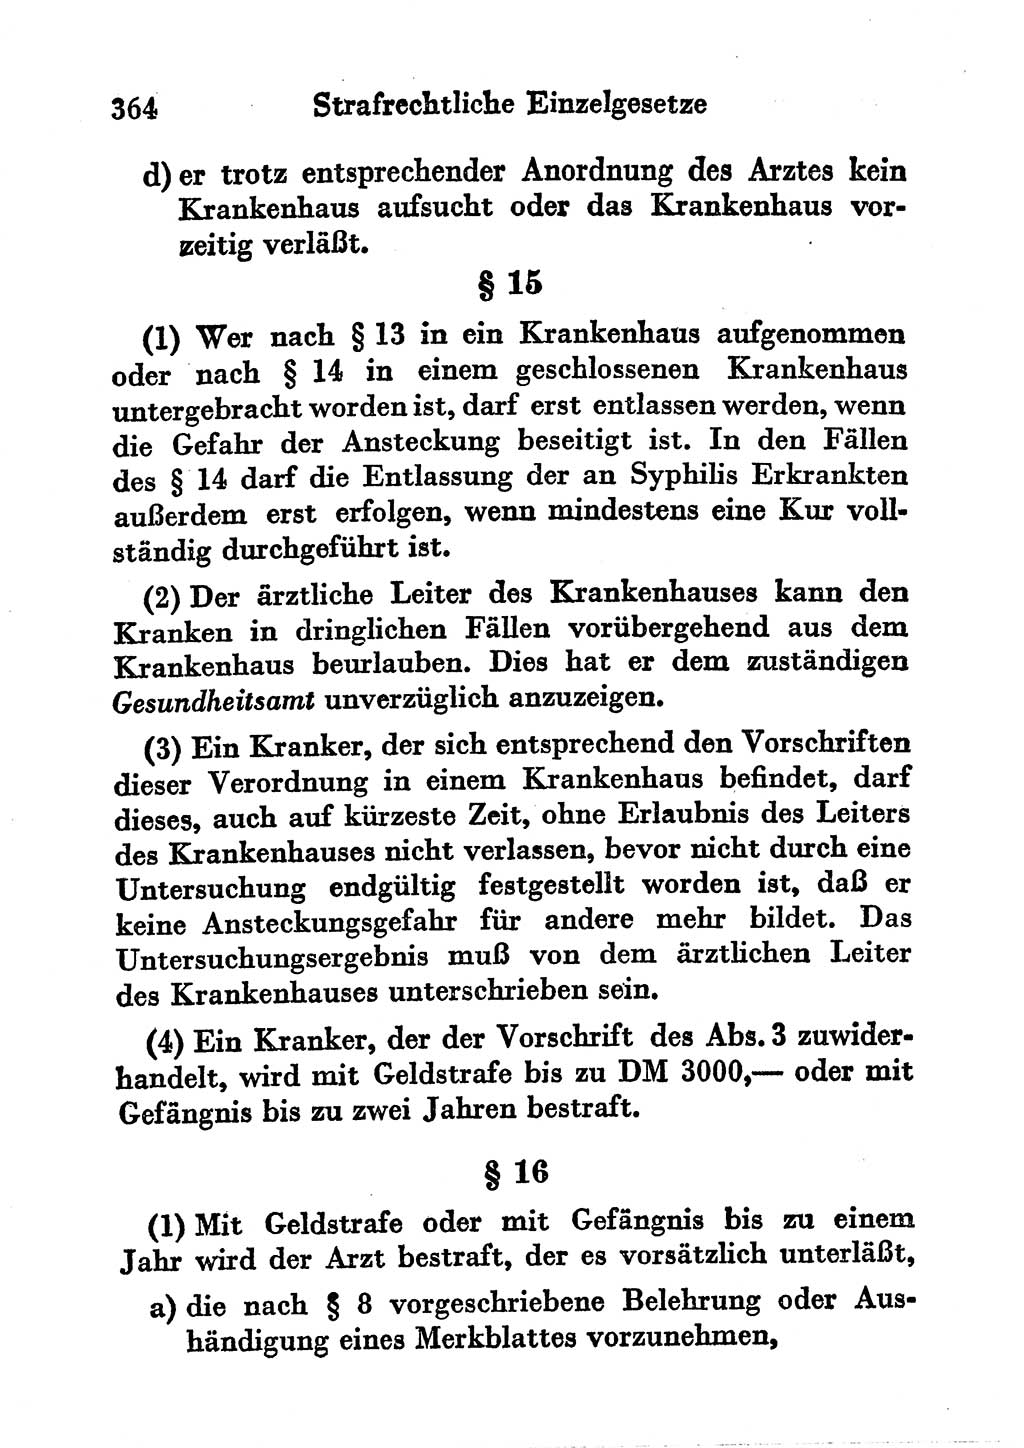 Strafgesetzbuch (StGB) und andere Strafgesetze [Deutsche Demokratische Republik (DDR)] 1956, Seite 364 (StGB Strafges. DDR 1956, S. 364)